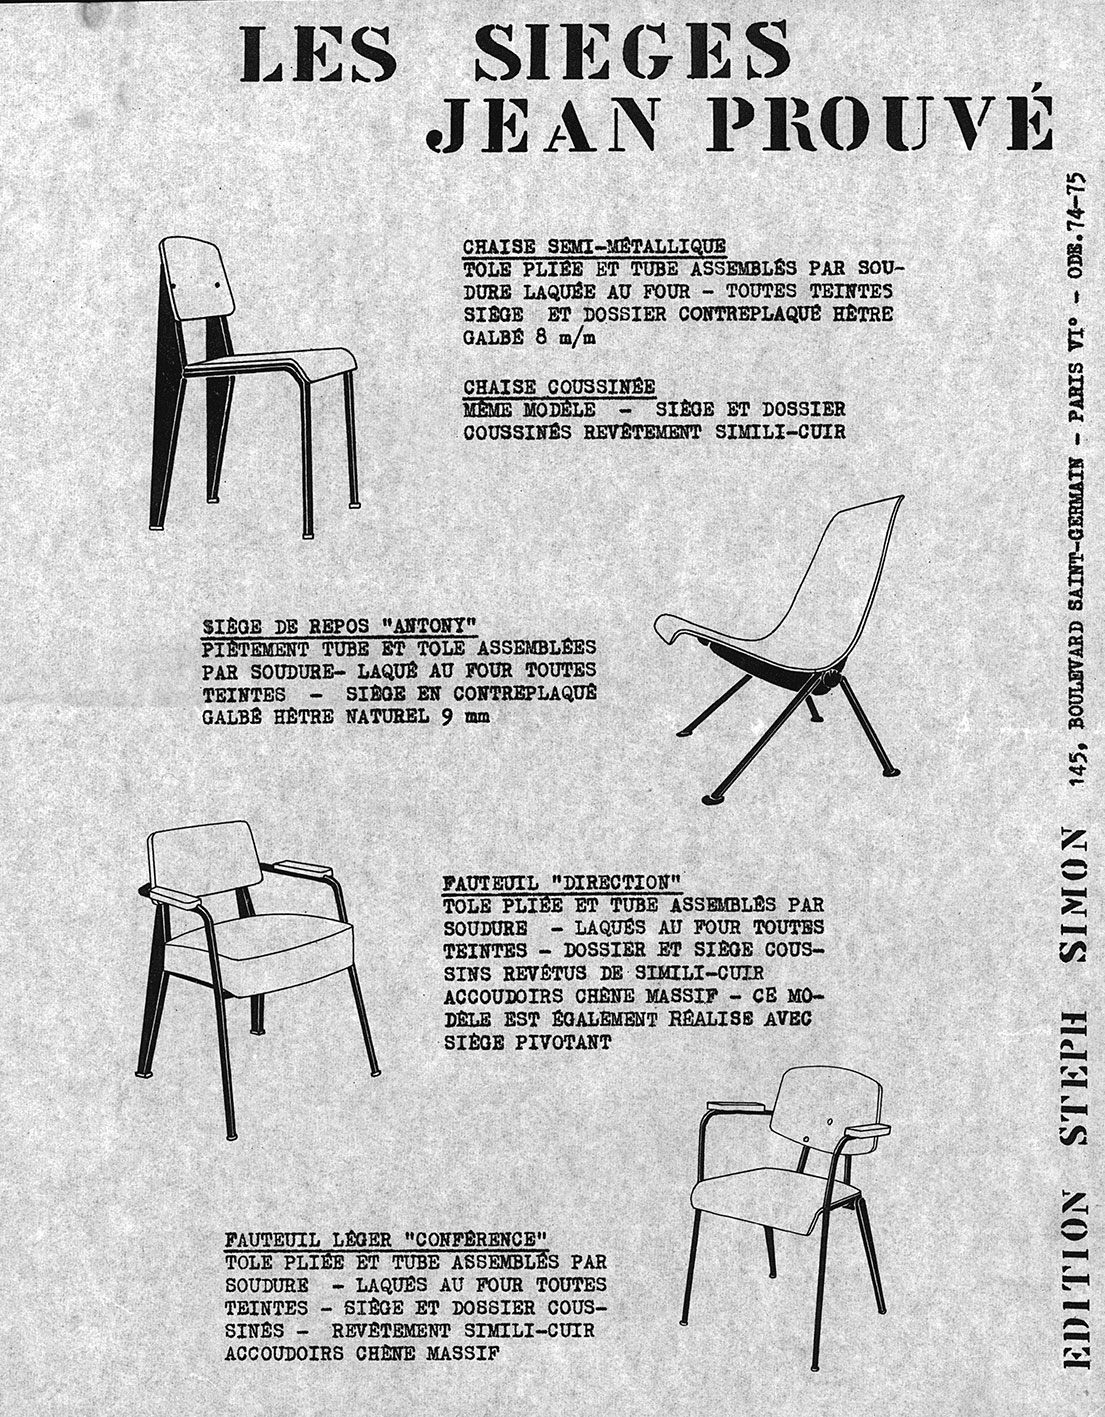 « Les sièges Jean Prouvé ». Fiche de présentation Steph Simon, c. 1957.